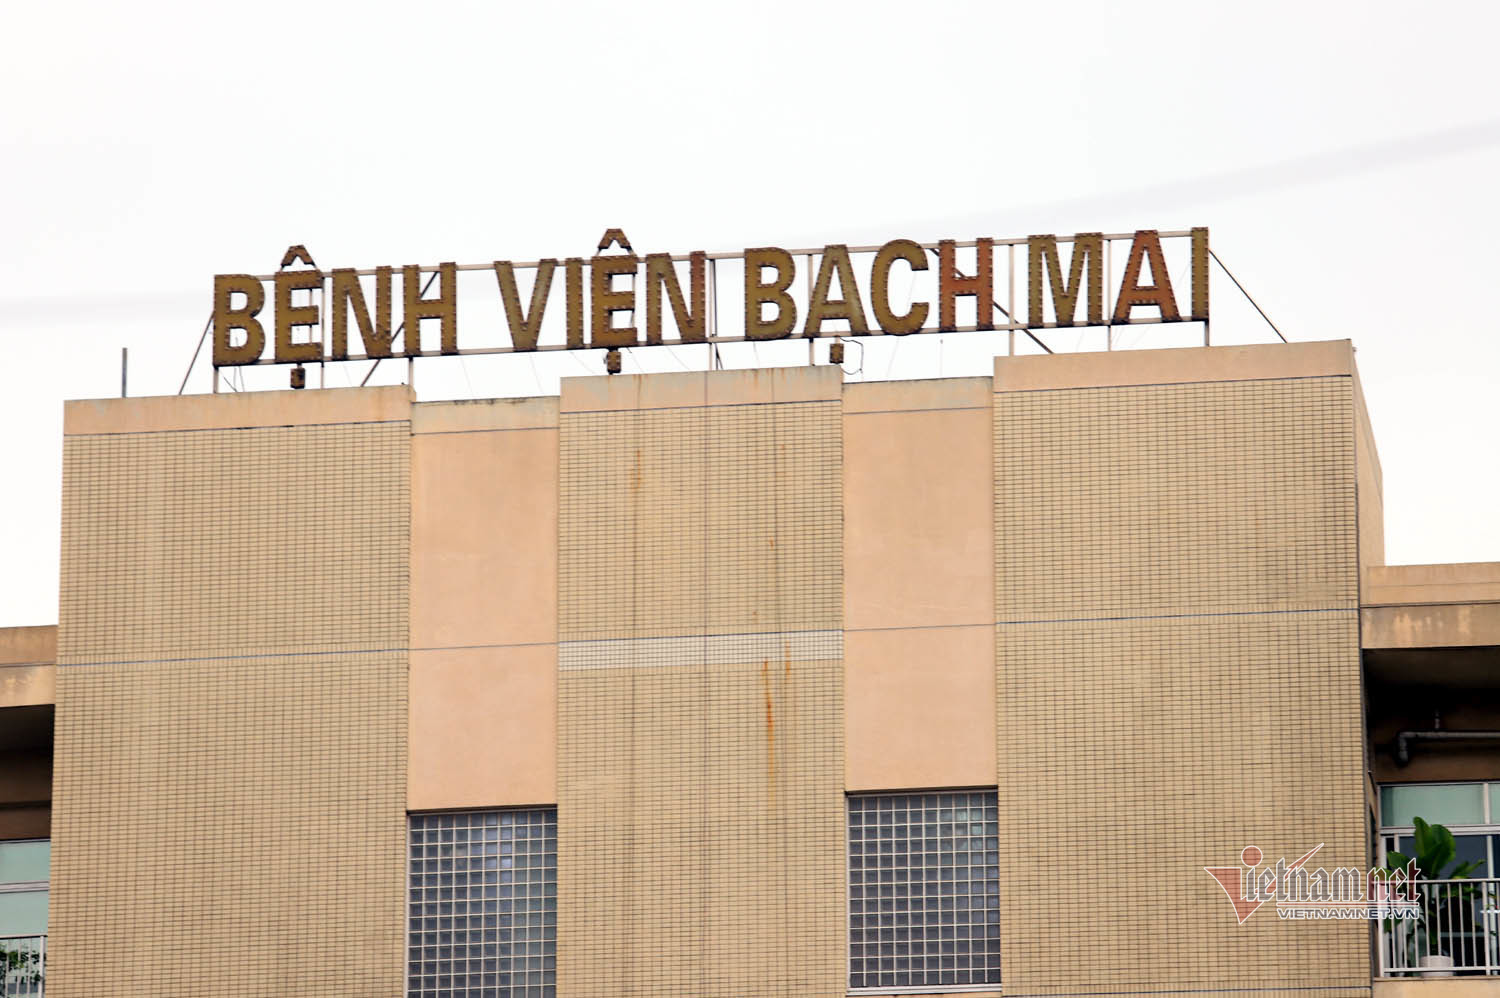 Nữ bệnh nhân 178 làm ở nhà ăn BV Bạch Mai khai báo gian dối